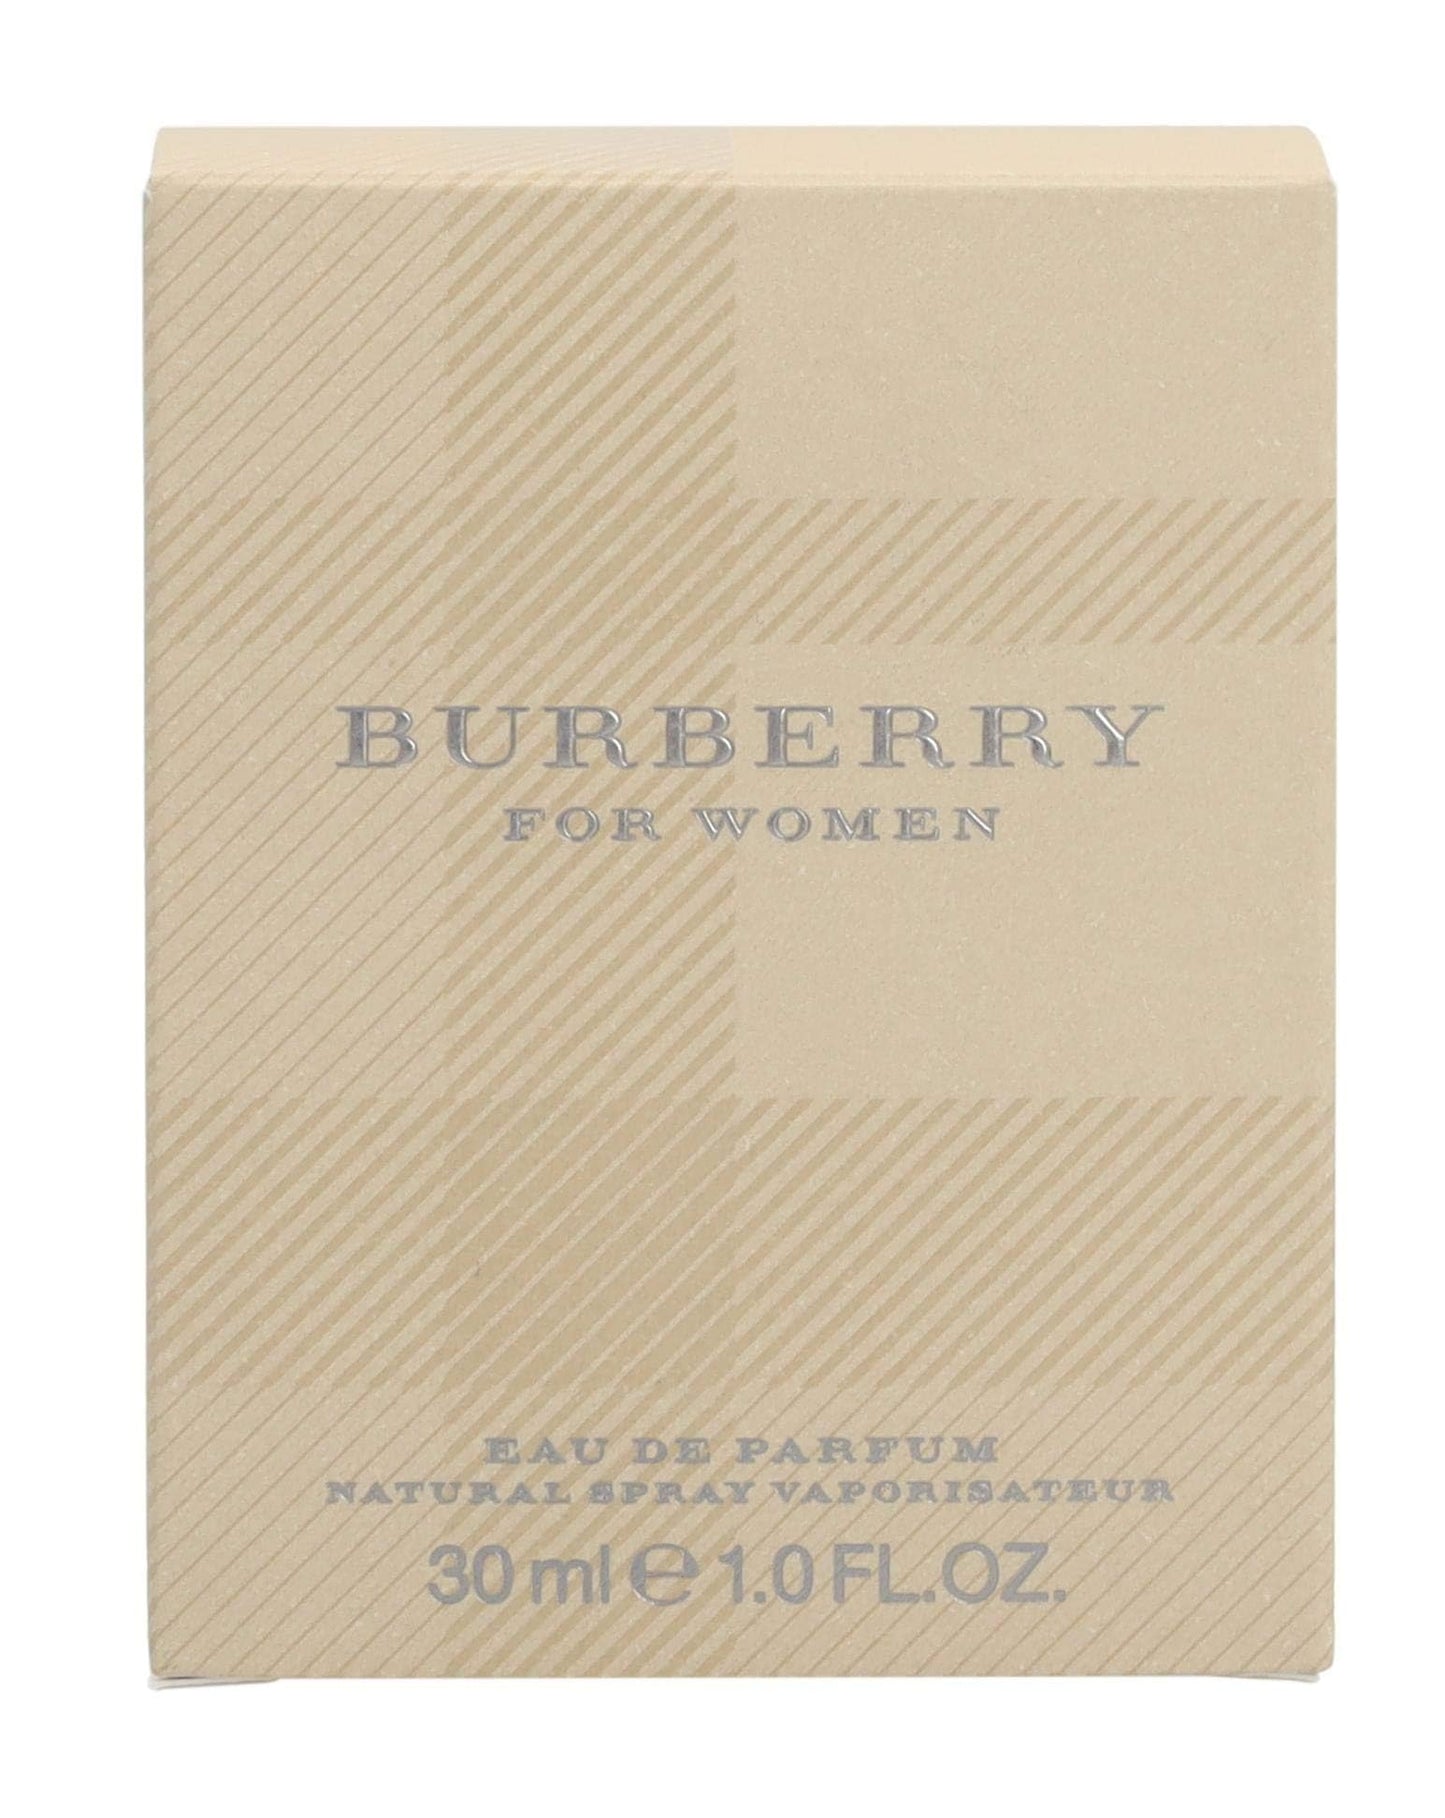 Burberry for Women, 1 oz EDP Spray